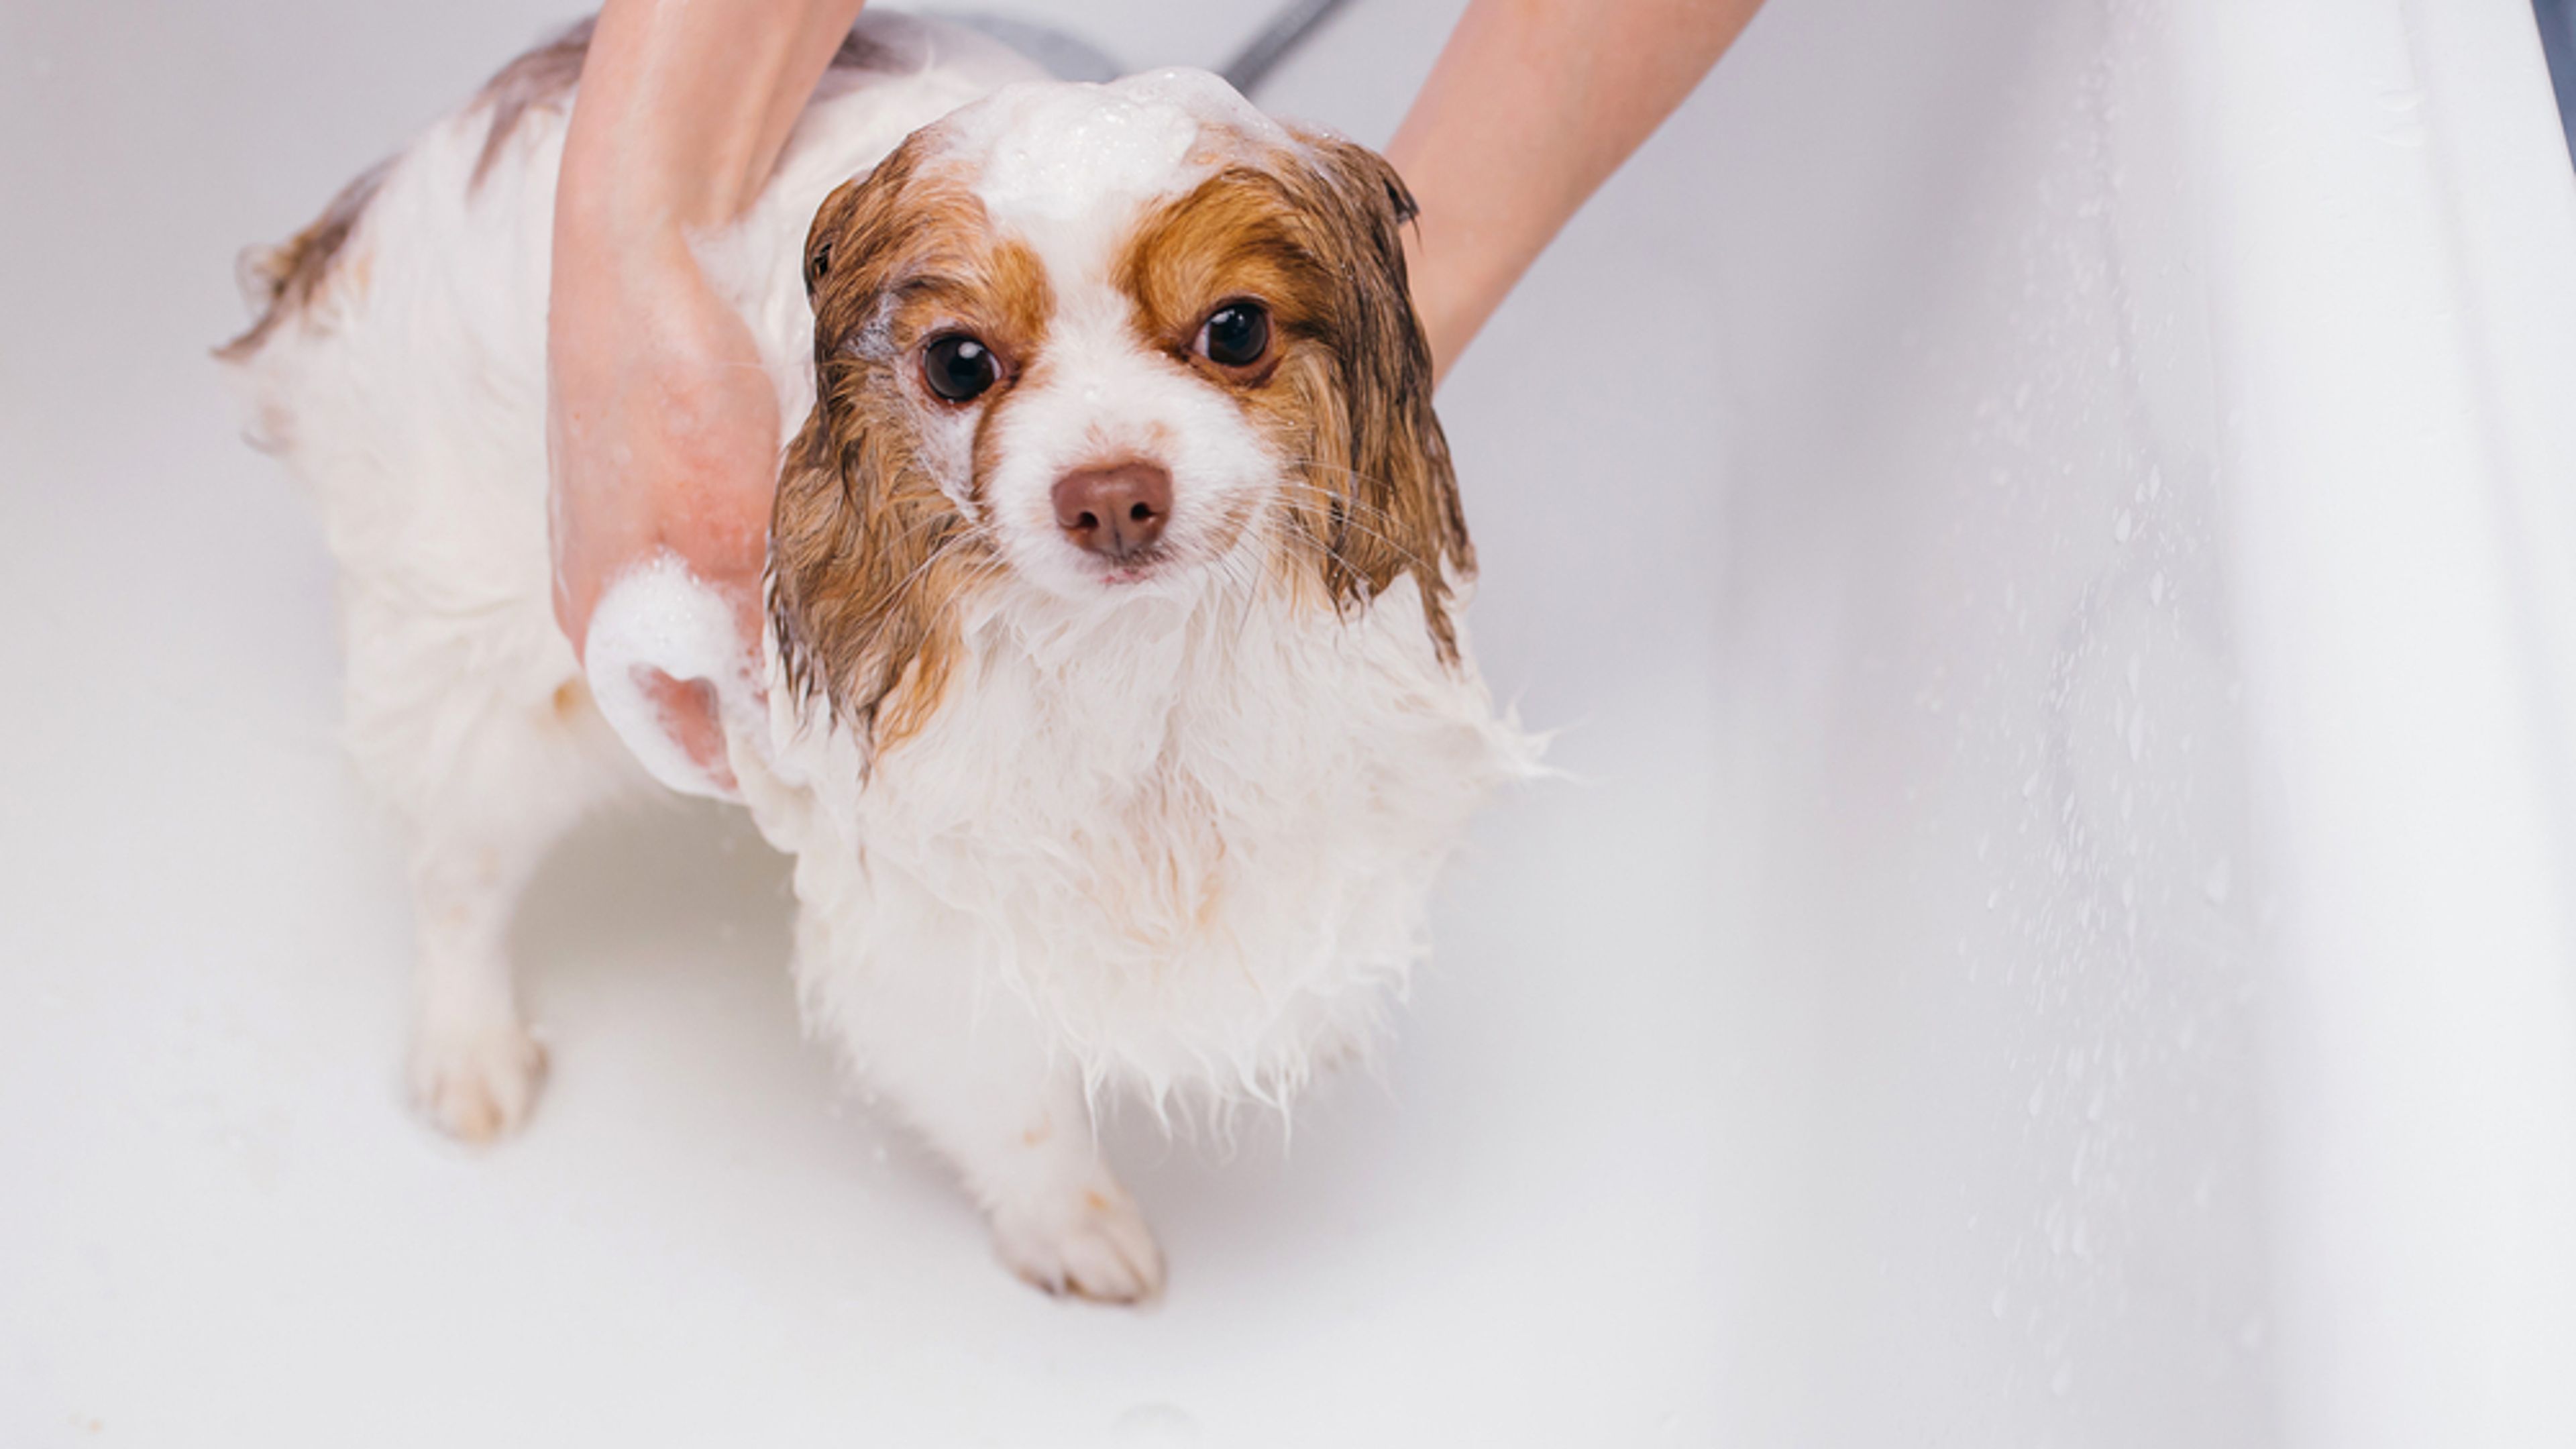 cucciolo di cane si fa il bagnetto nella vasca